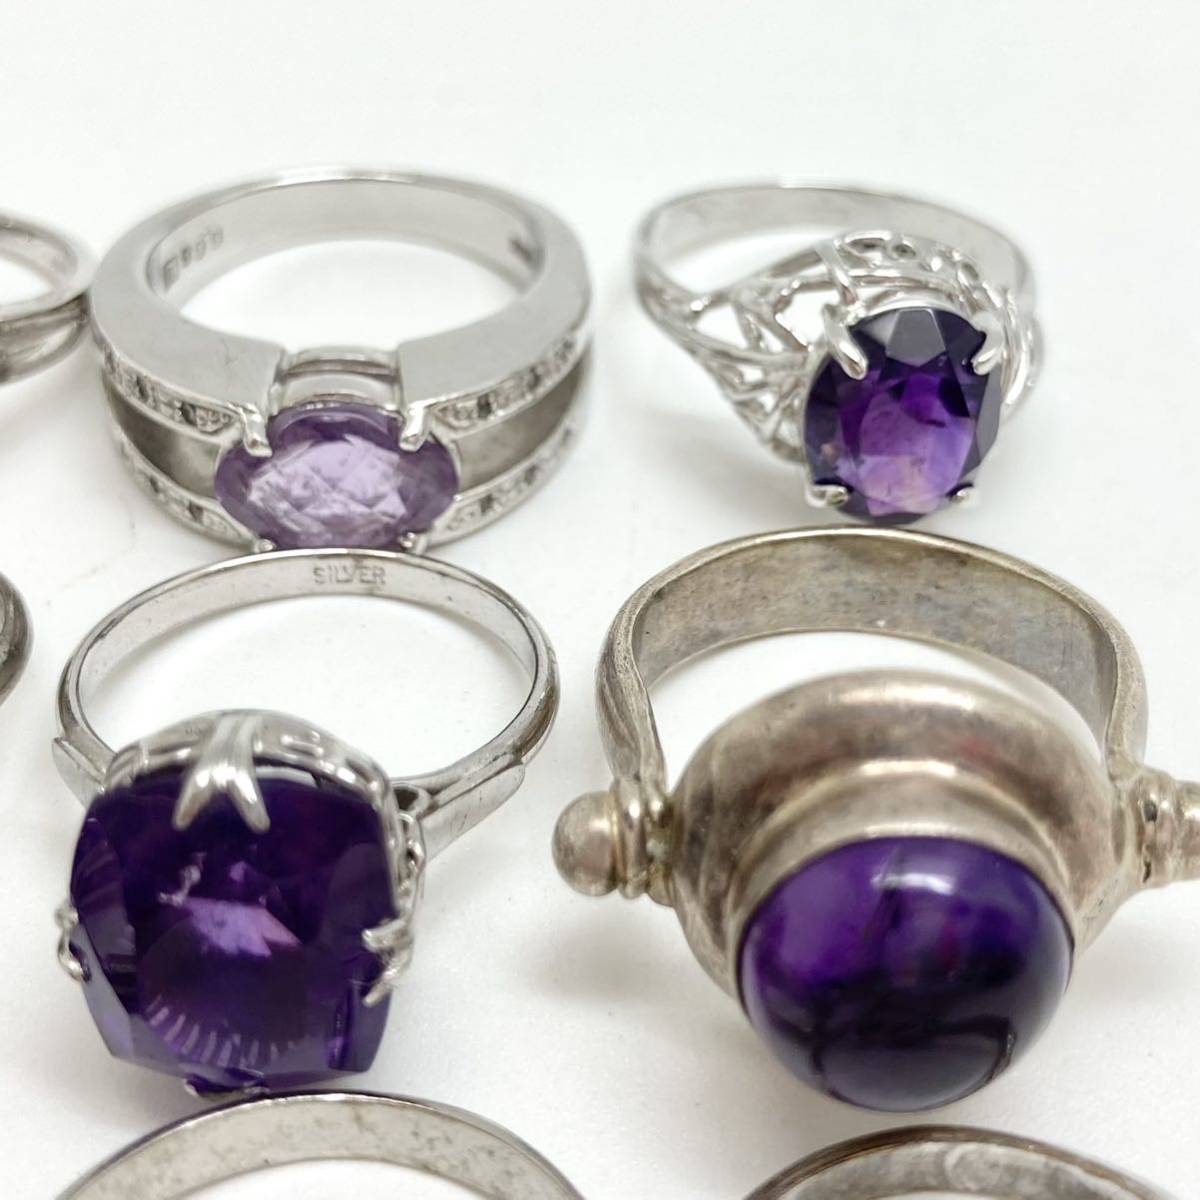 ダイヤ付き「アメジストおリングまとめ」 m 重量約46g アメジスト 紫水晶 amethyst 指輪 リング ring accessory silver 925 CE0_画像4